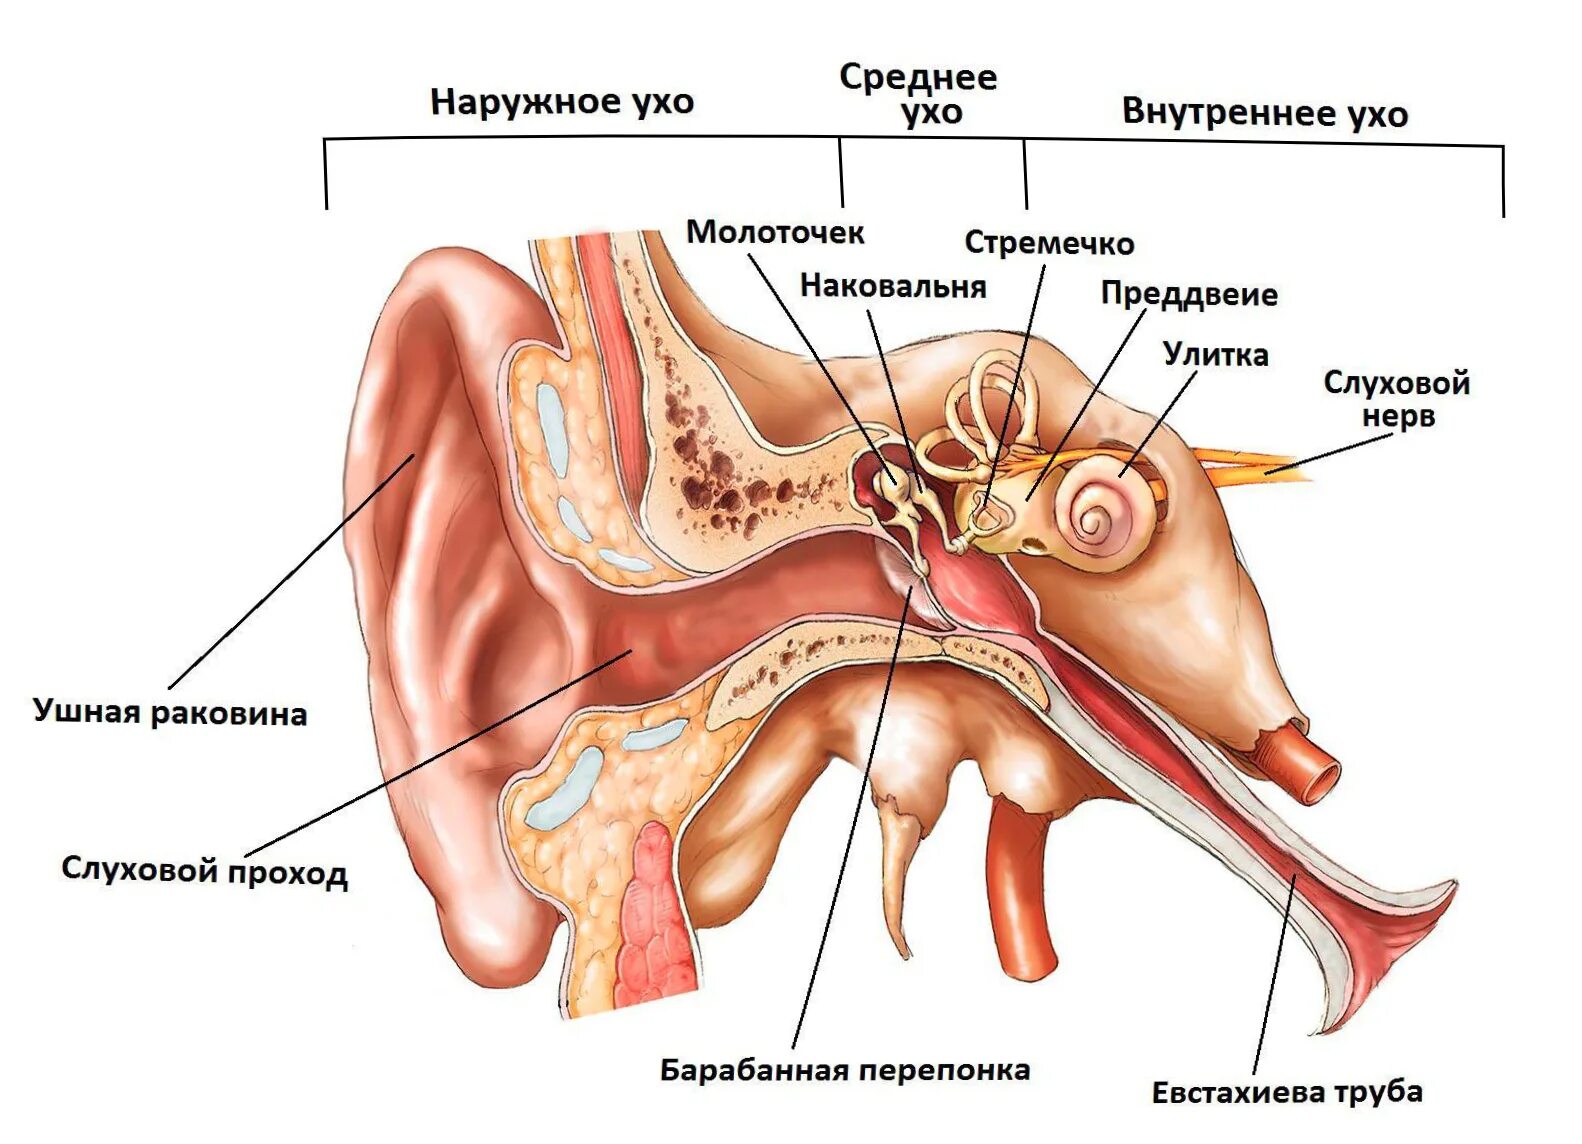 Строение уха слуховые косточки. Строение уха человека слуховые косточки. Среднее ухо барабанная перепонка слуховые косточки. Строение среднего уха физиология. В среднем ухе расположены 3